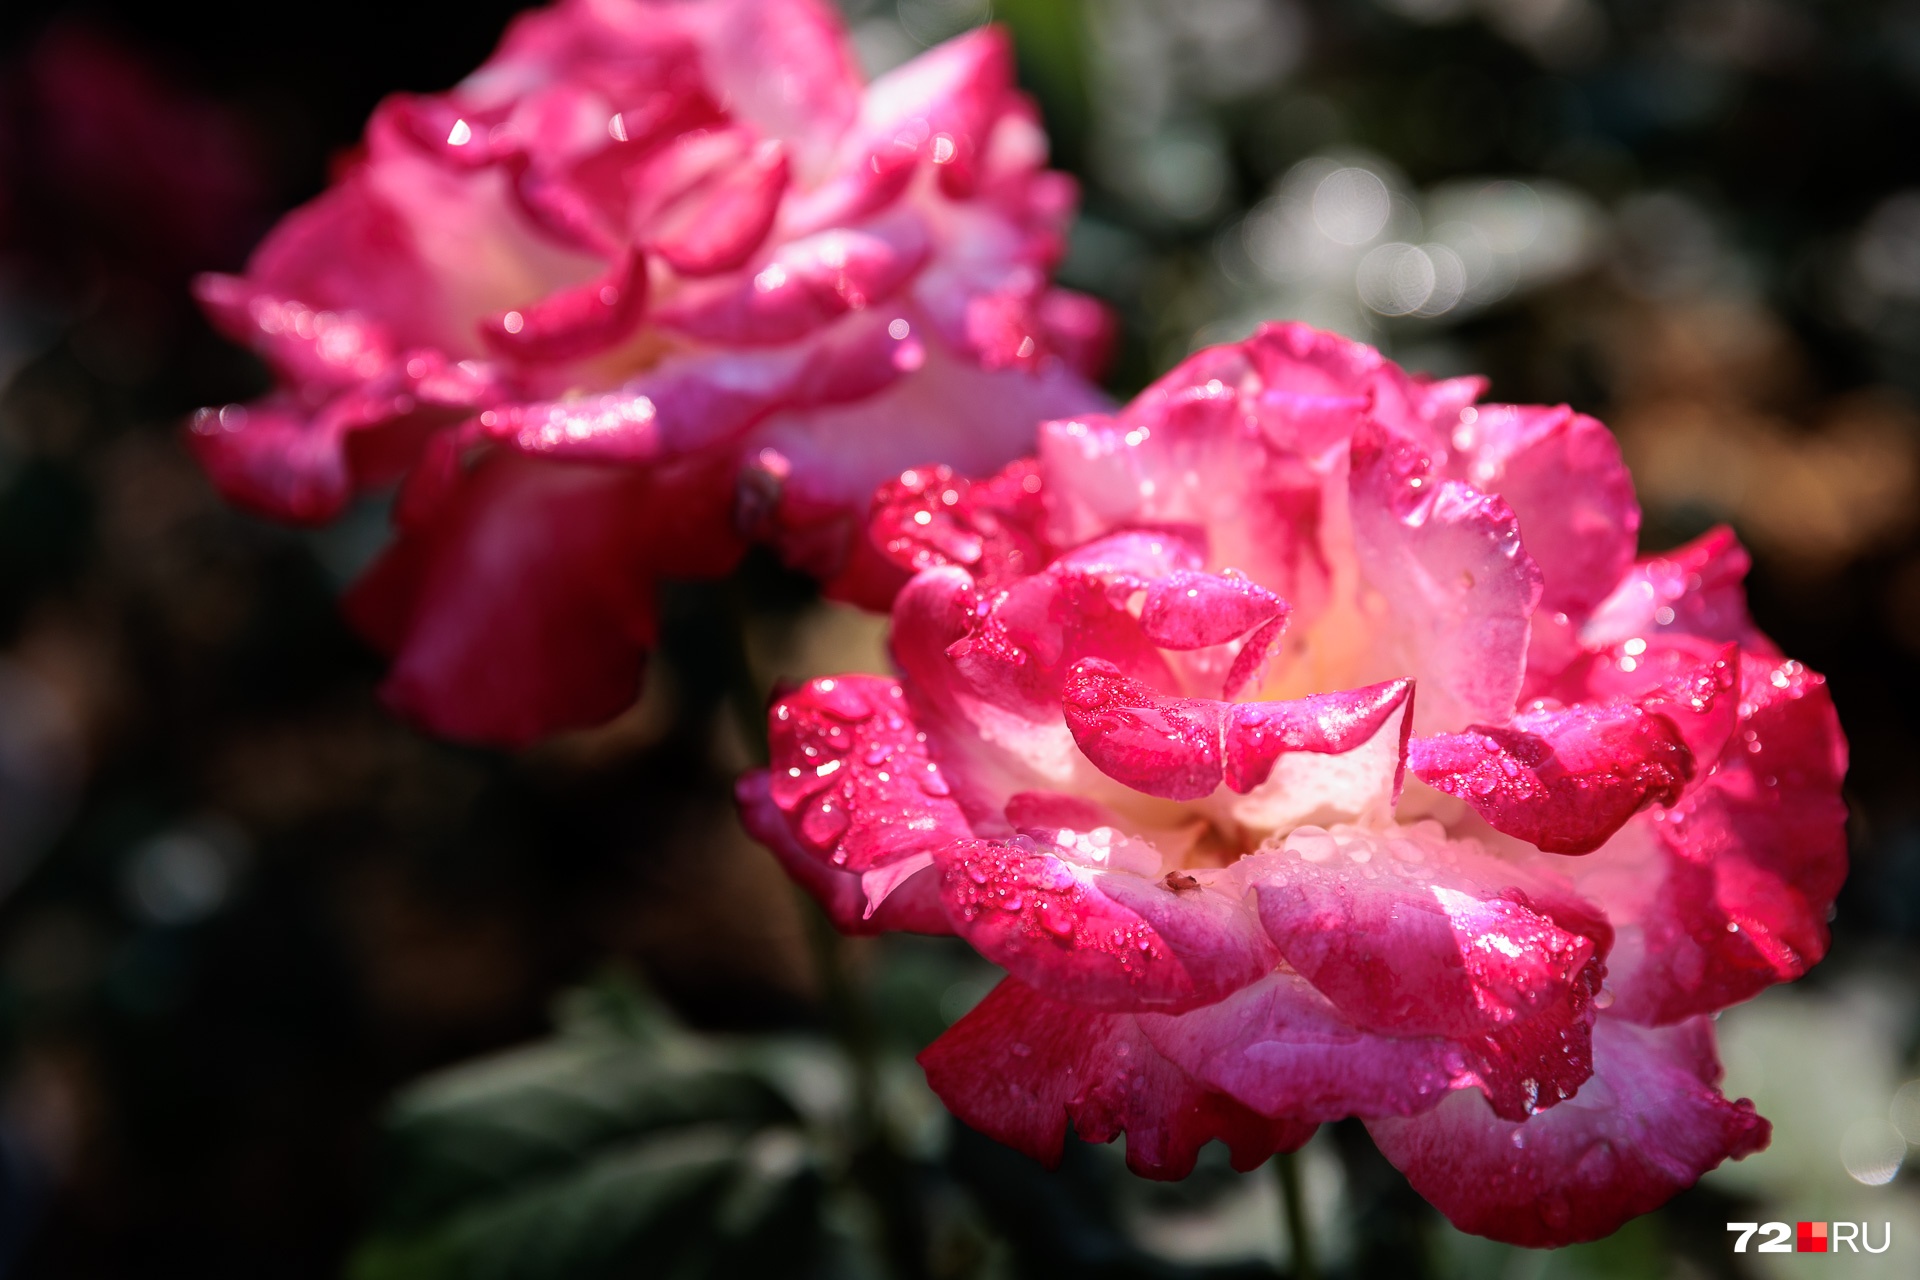 Завершим виртуальную прогулку по саду очень фотогеничными розами. И кустов, и сортов со временем станет еще больше: Наталья в этом уверена на все 100%